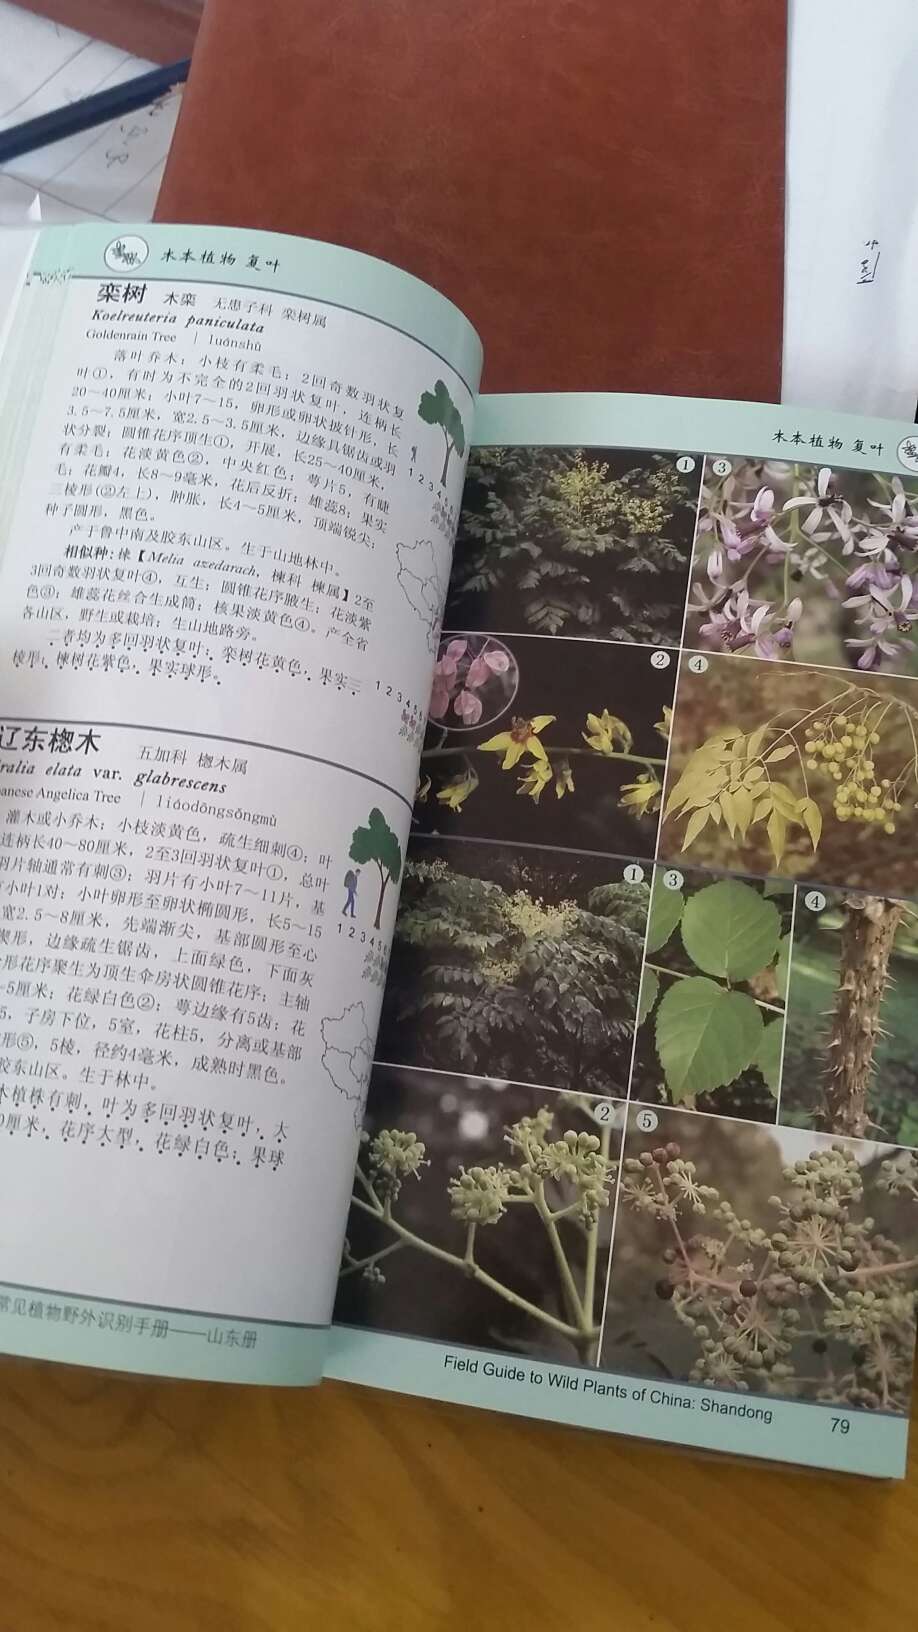 这本书不错，没有发现错误，专业！不像一些植物类书，常识性错误一大片。不过我觉得这本书适合业余的植物爱好者，这种分类方式看着不太习惯，还是按科属分类看着舒服一点，再就是种类还是有点少，总共收集了700余种植物，这是山东植物一半的量，很多植物查不到，不过这个工作量也是不小了，像作者致敬！